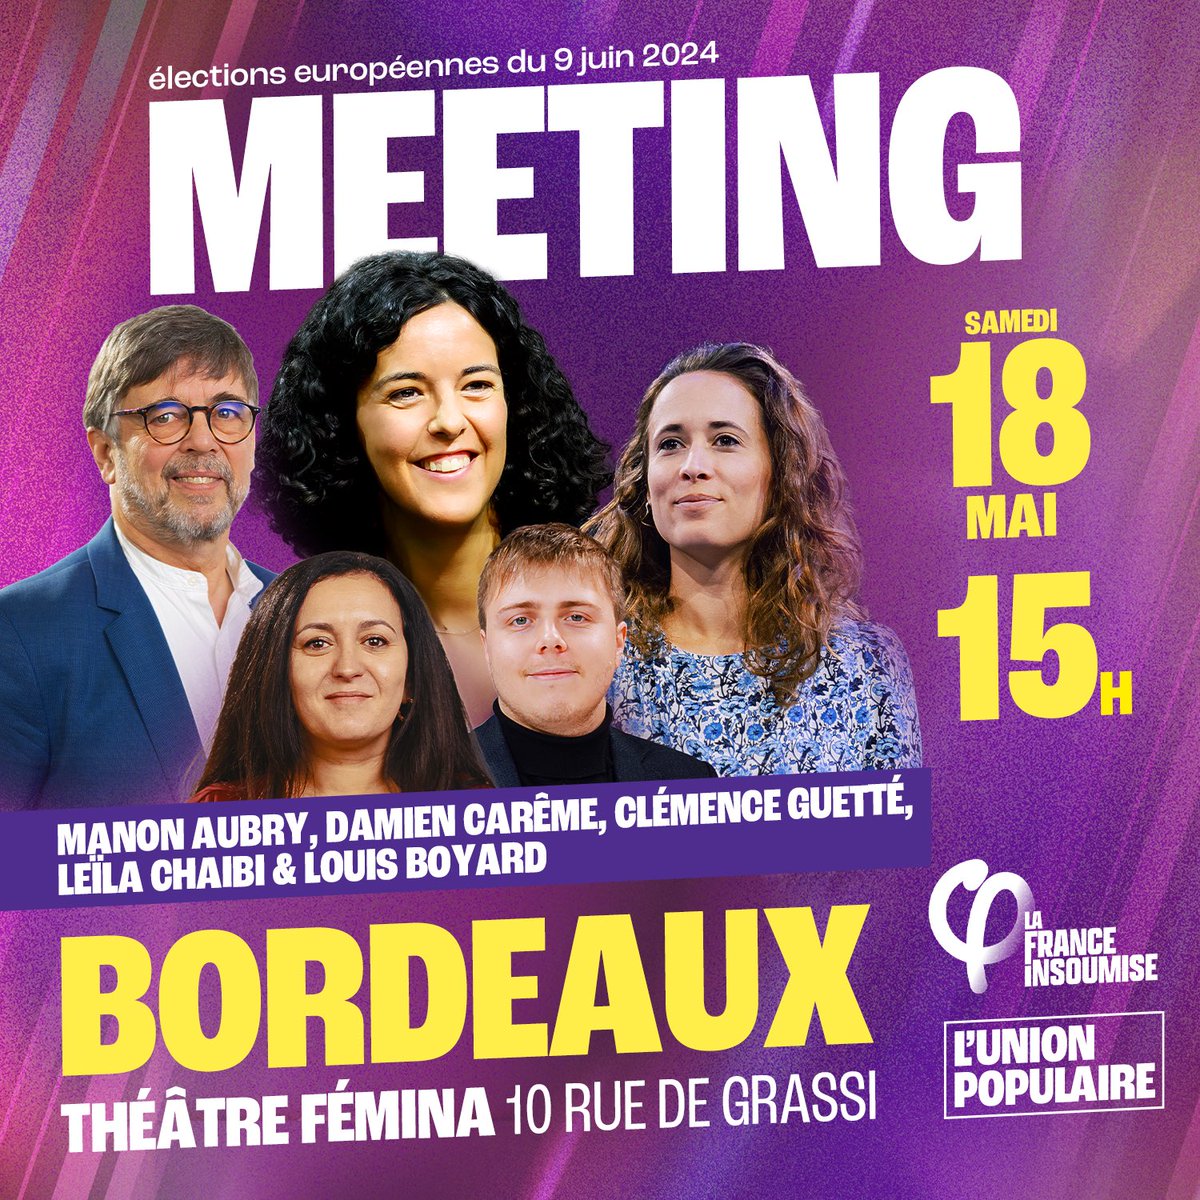 🔴 Grand meeting à Bordeaux le 18 Mai à 15h ! Retrouvez @ManonAubryFr tête de liste, @DamienCAREME eurodéputé écologiste, Leïla Chaibi eurodéputée, @LouisBoyard et @Clemence_Guette députés LFI-NUPES, pour un grand meeting de l’#UnionPopulaire. 👉 Rendez-vous au Théâtre Fémina…